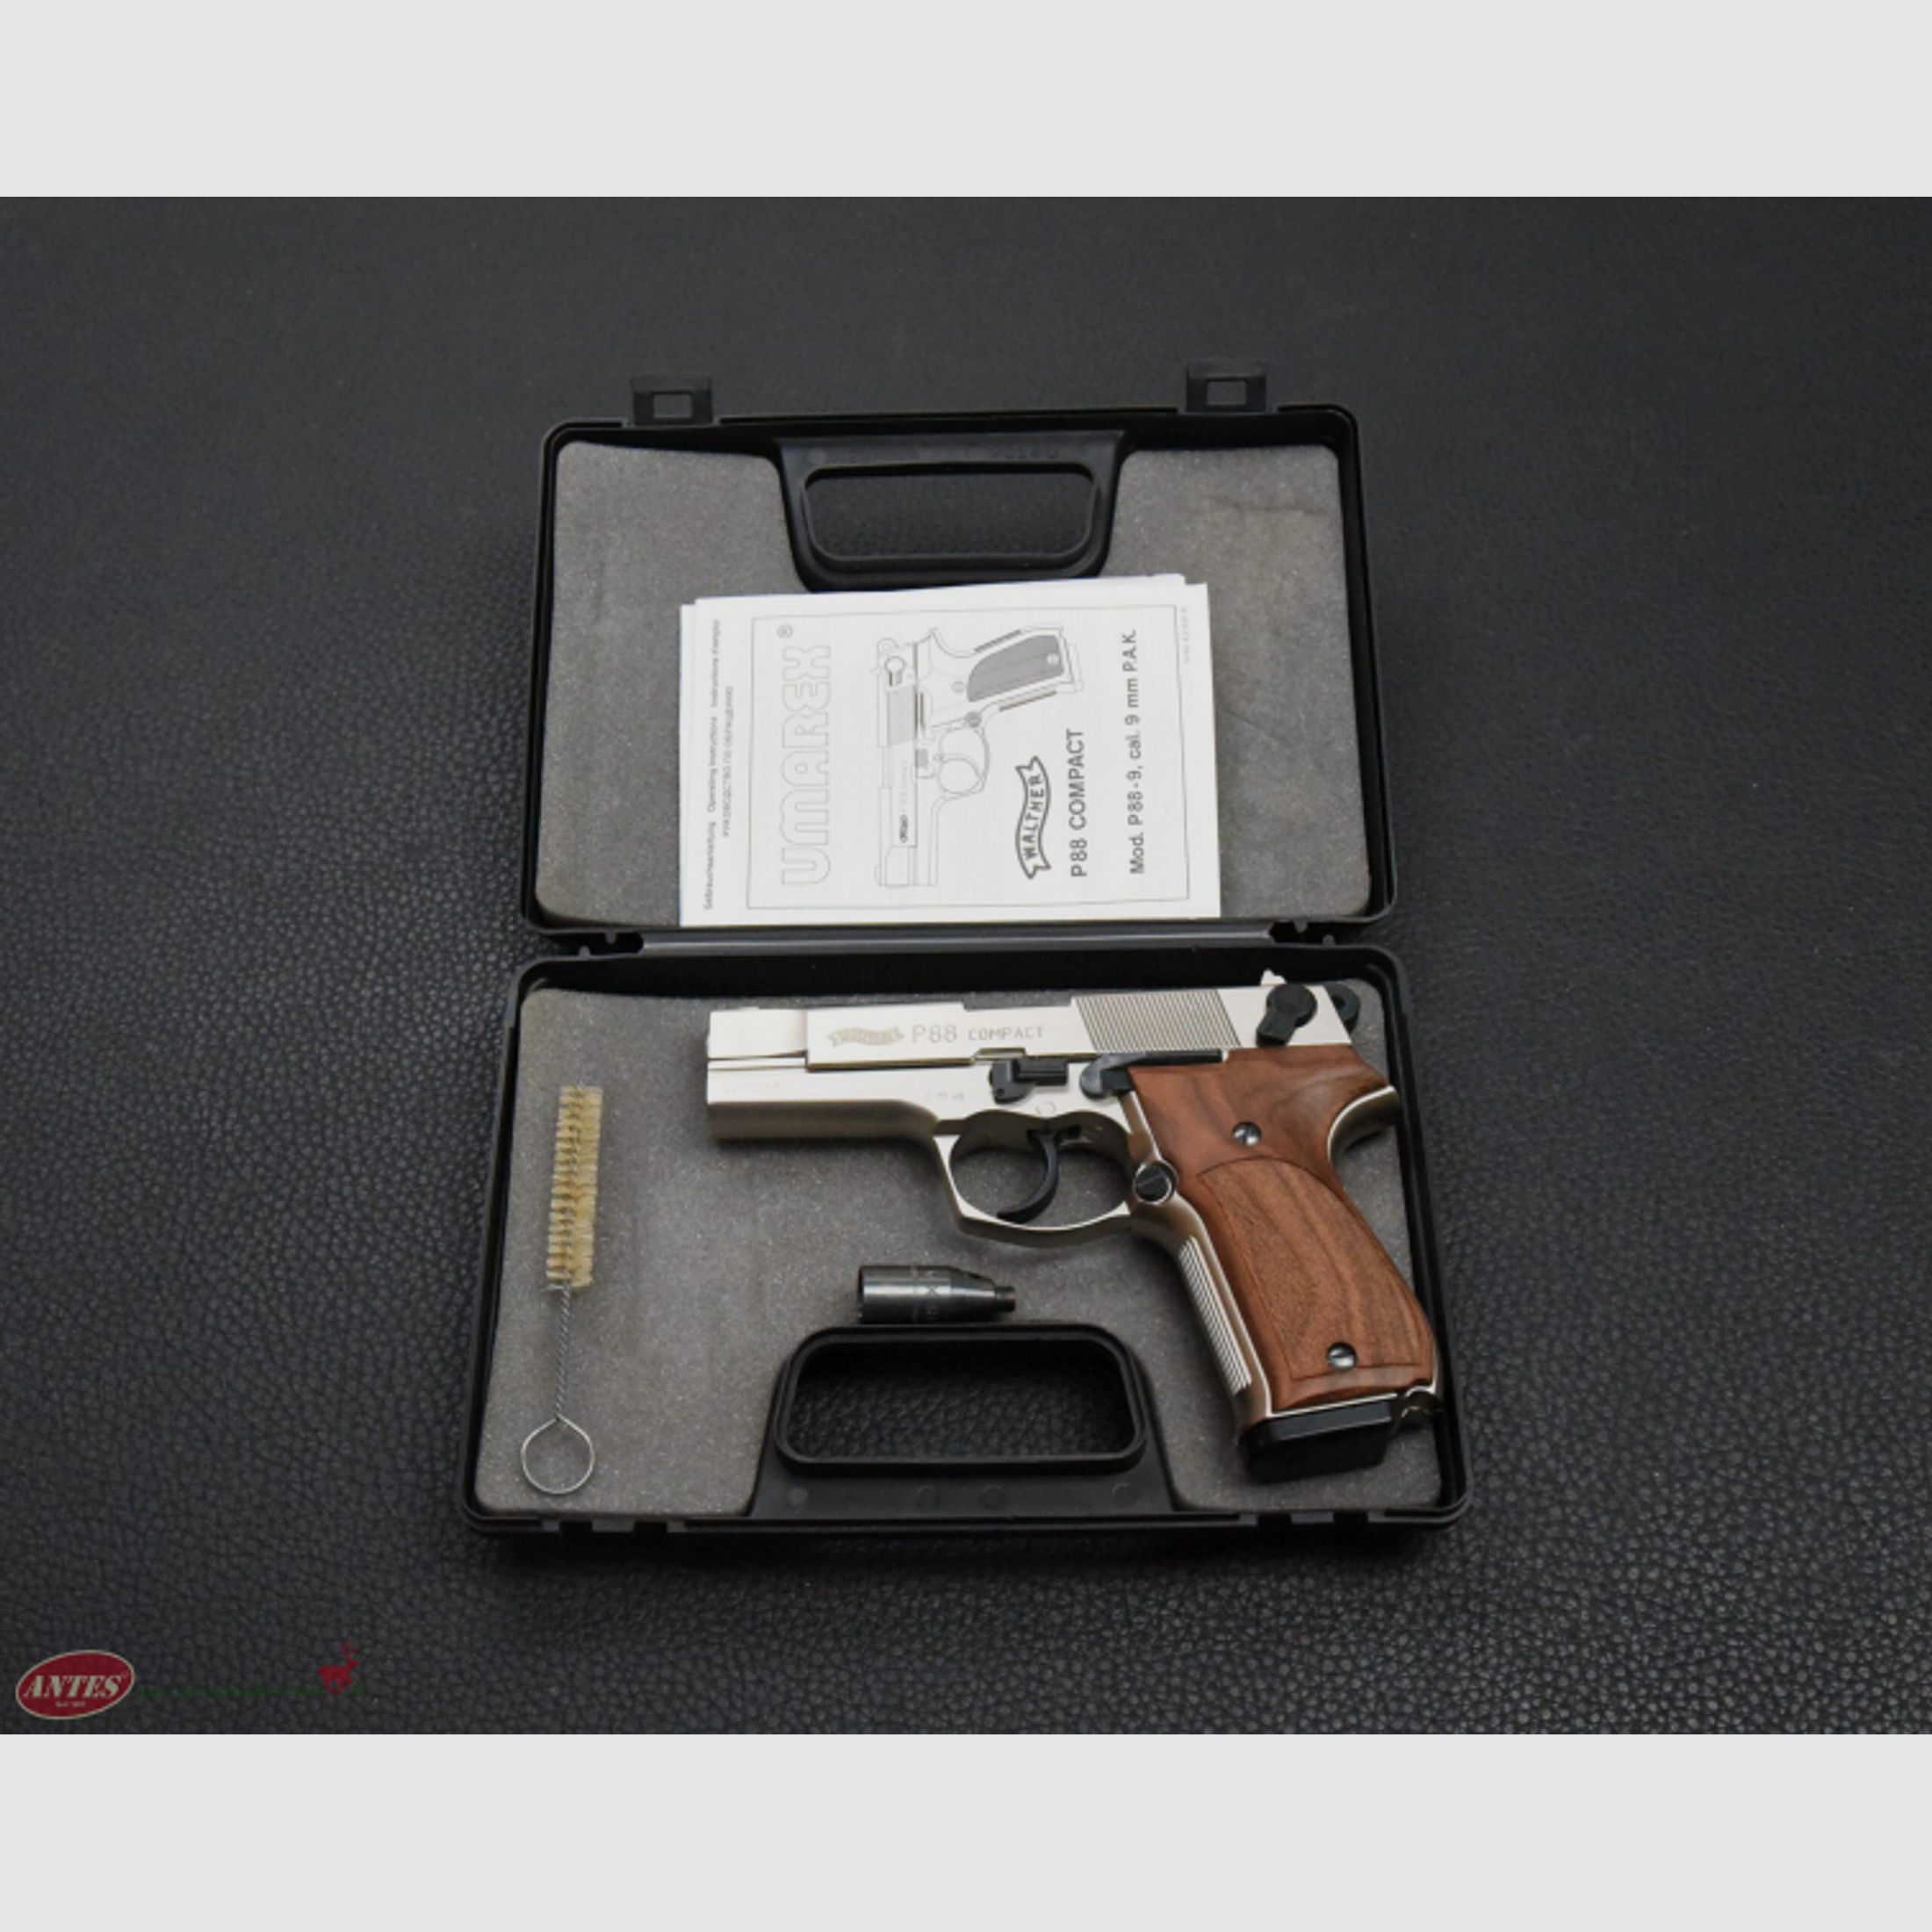 Umarex: Schreckschuss-Pistole Walther Mod. P88-9 Compact vernickelt (PTB 613), Kal. 9 mm P.A.K.